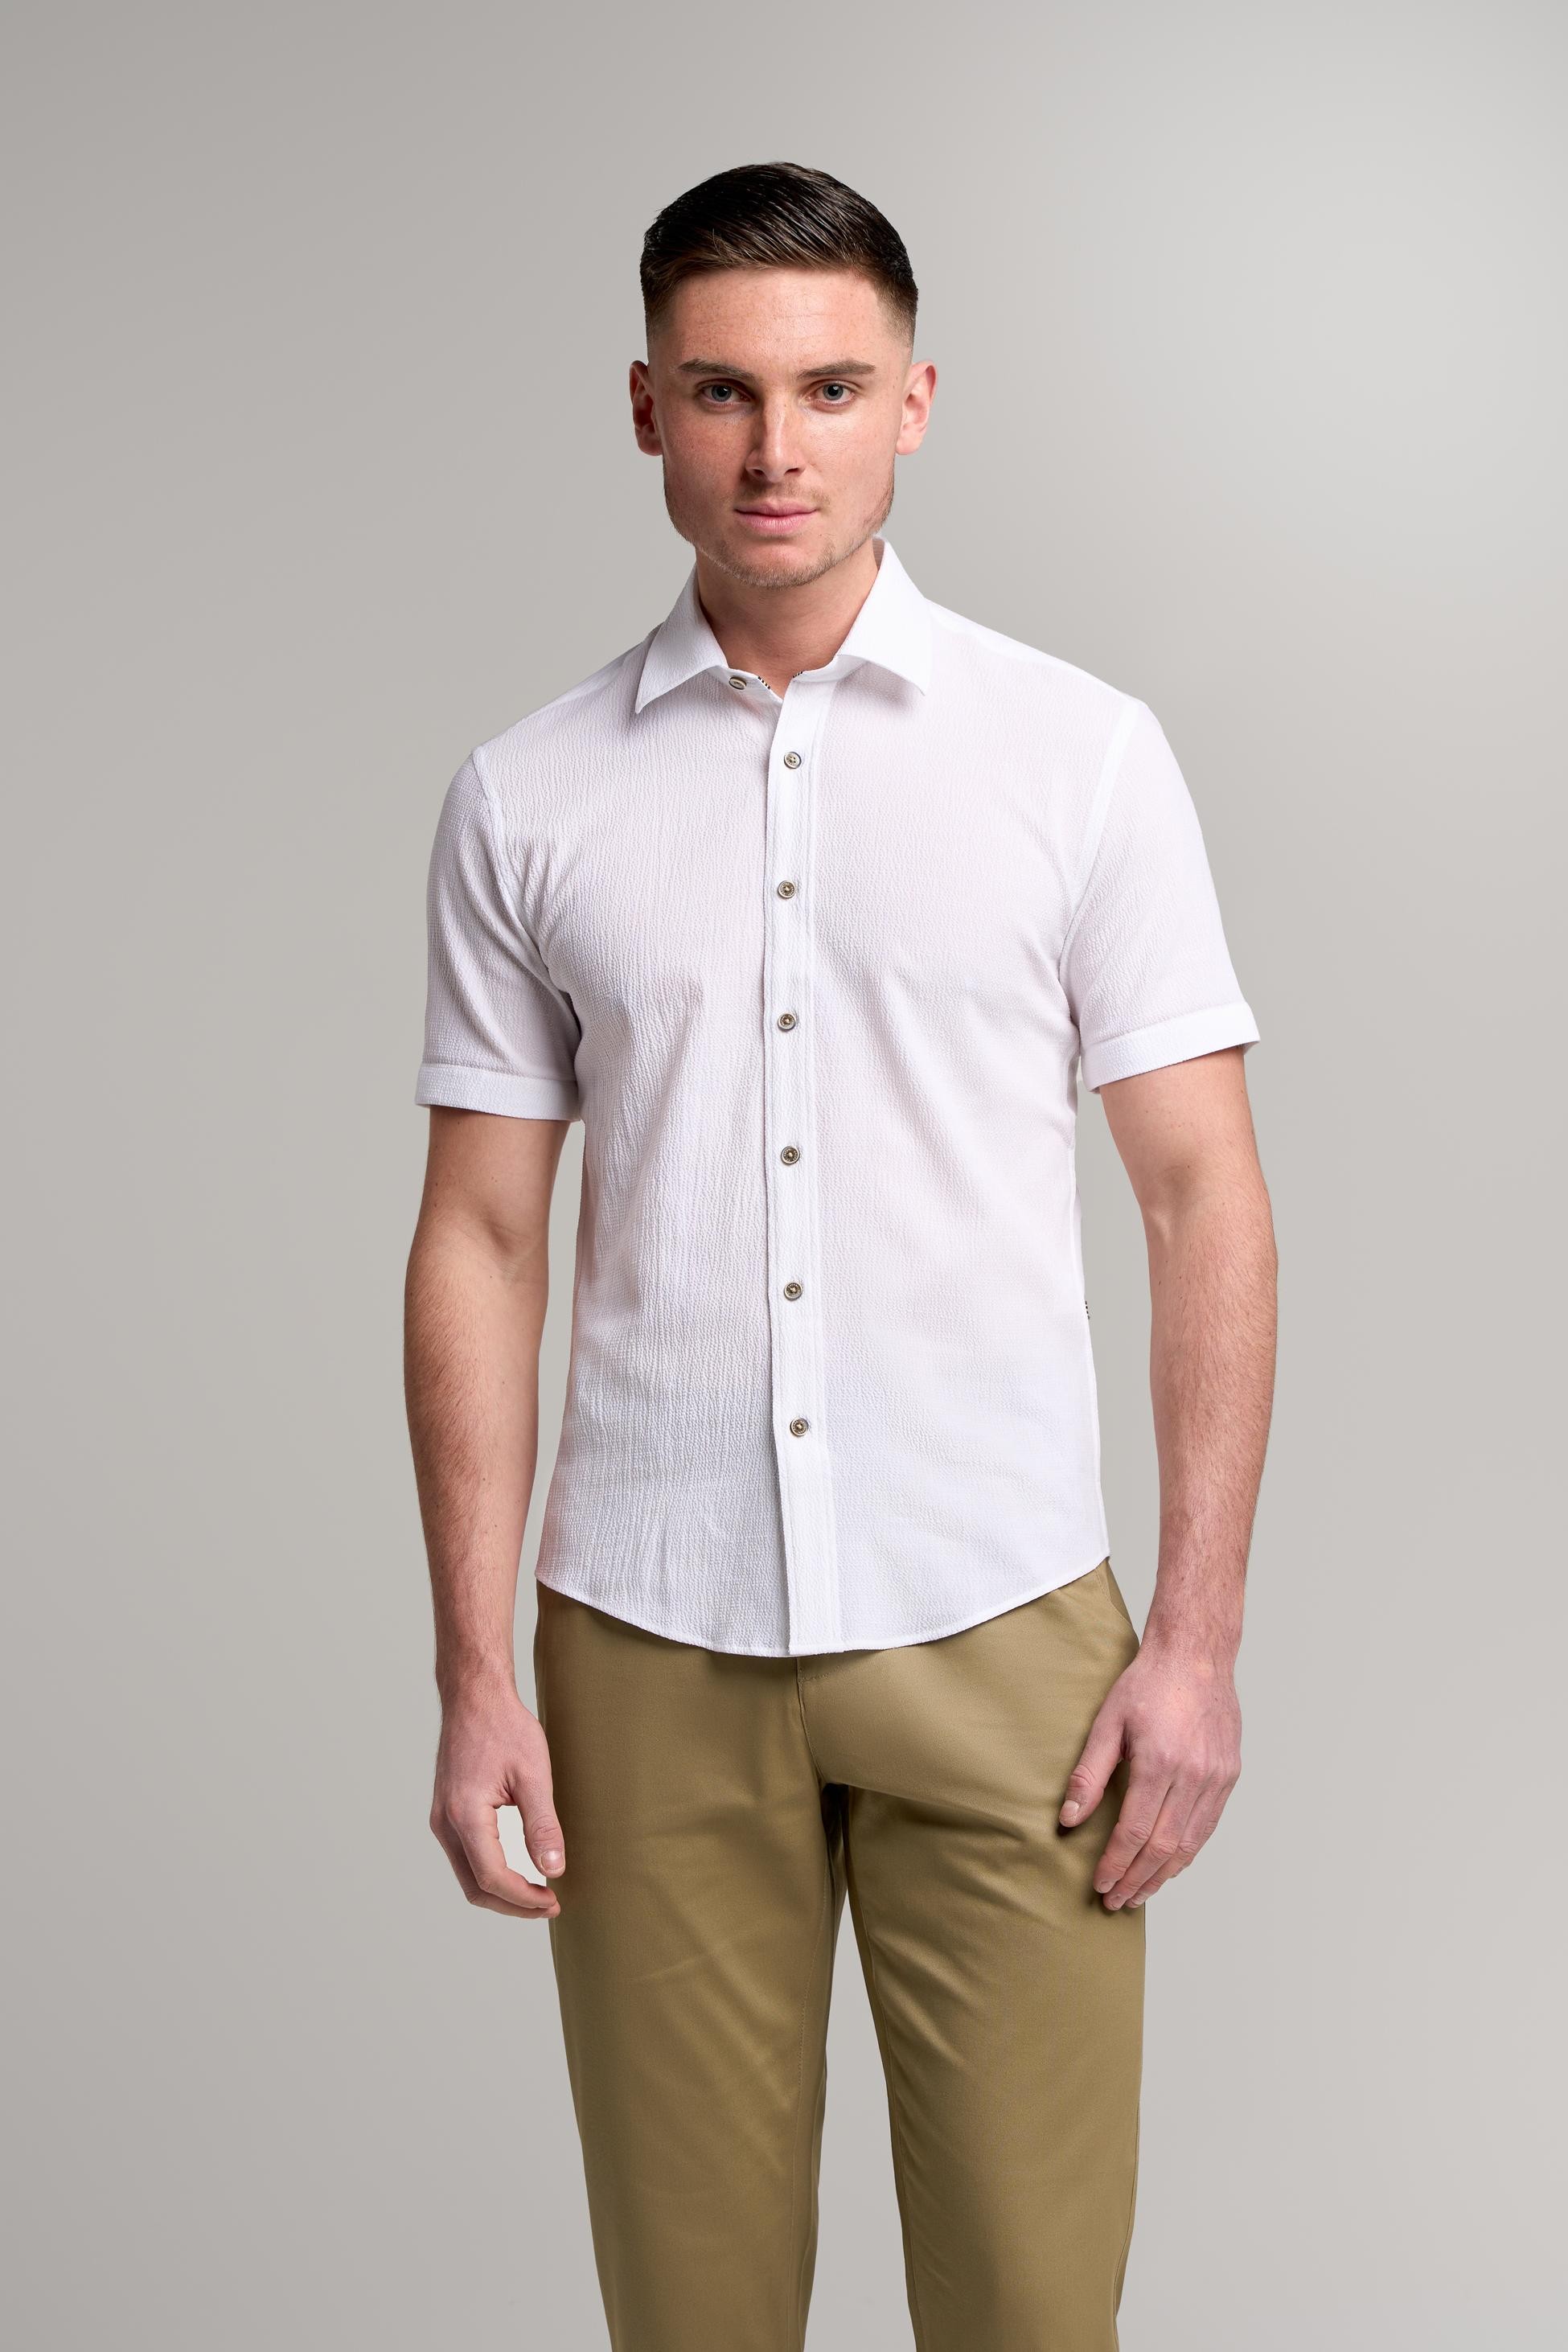 Chemise Slim Fit Texturée en Coton pour Homme – KAI - Blanc